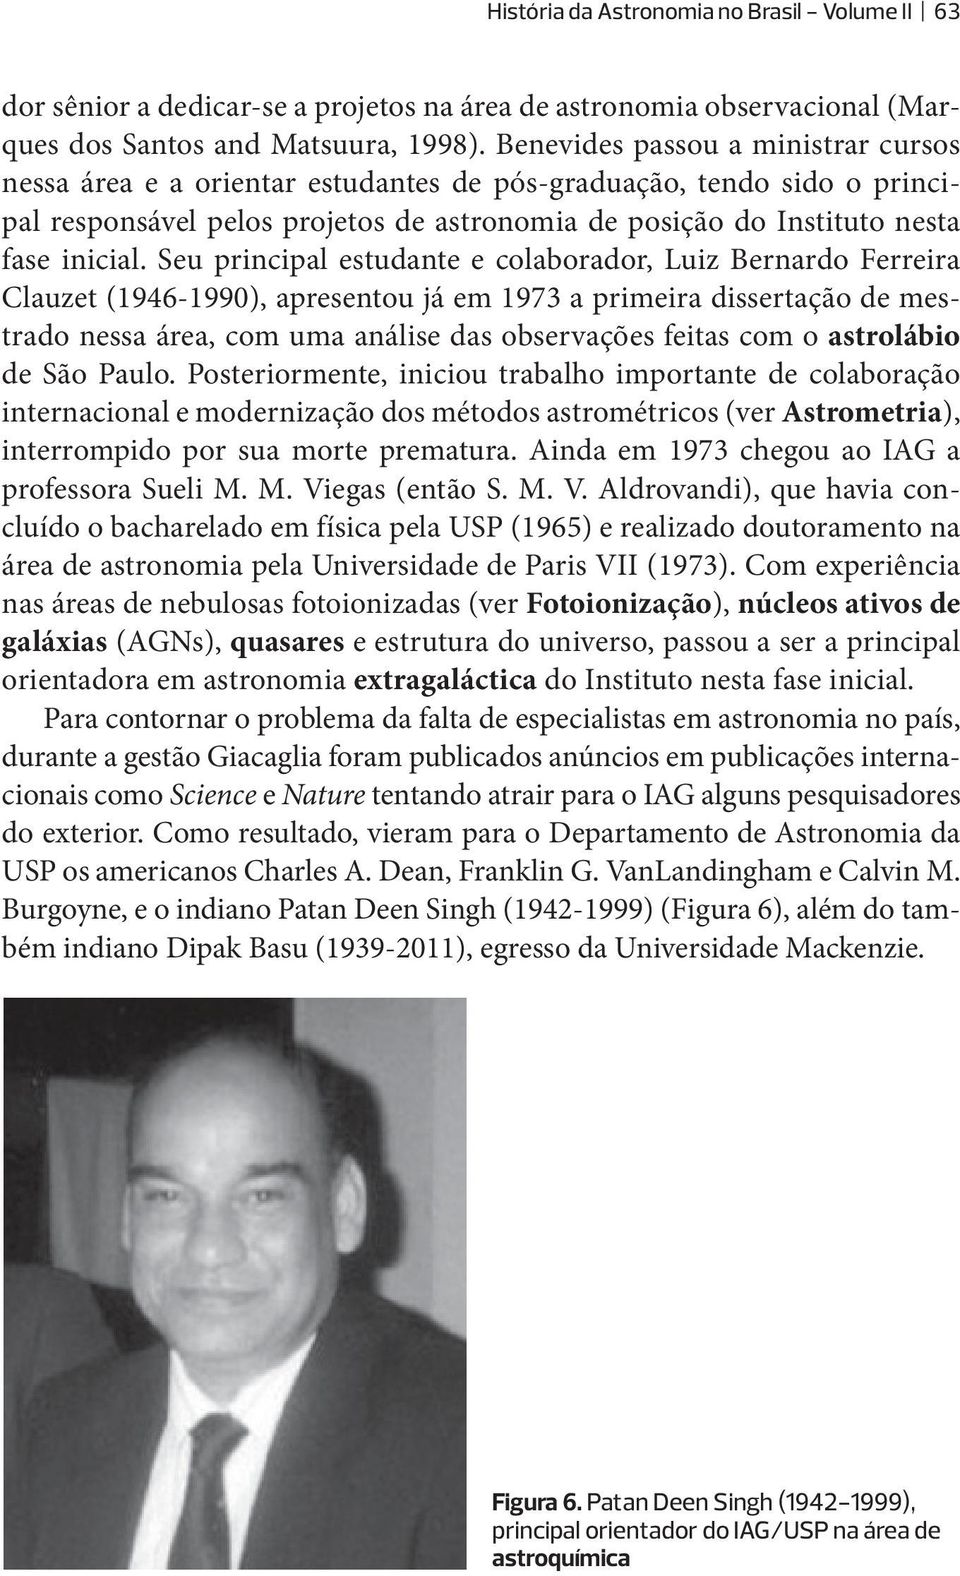 Seu principal estudante e colaborador, Luiz Bernardo Ferreira Clauzet (1946-1990), apresentou já em 1973 a primeira dissertação de mestrado nessa área, com uma análise das observações feitas com o